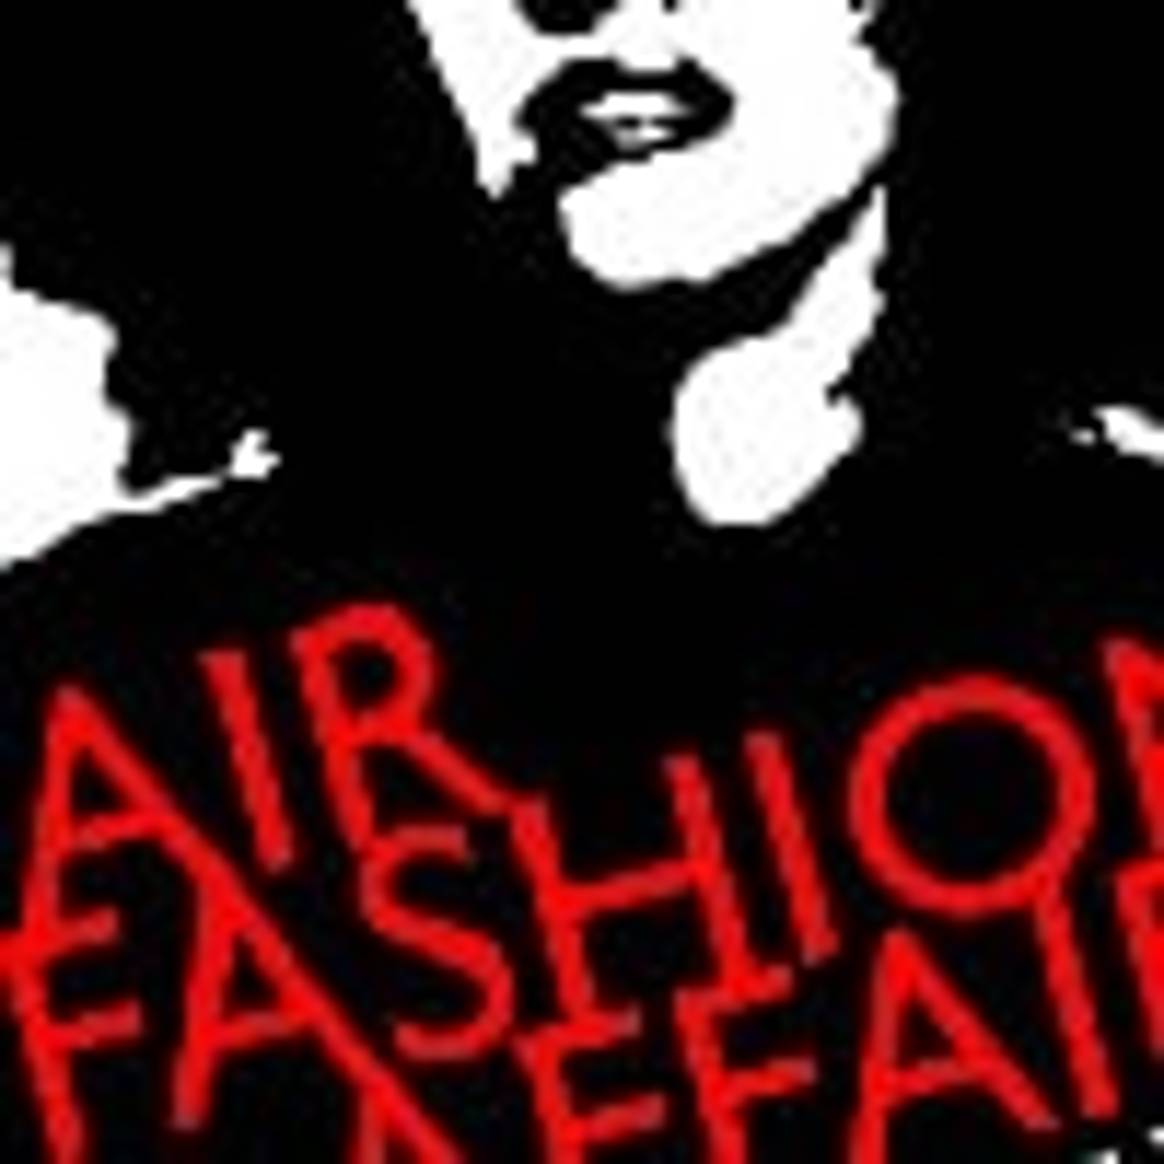 Berliner Messe zeigt 'Fair Fashion'